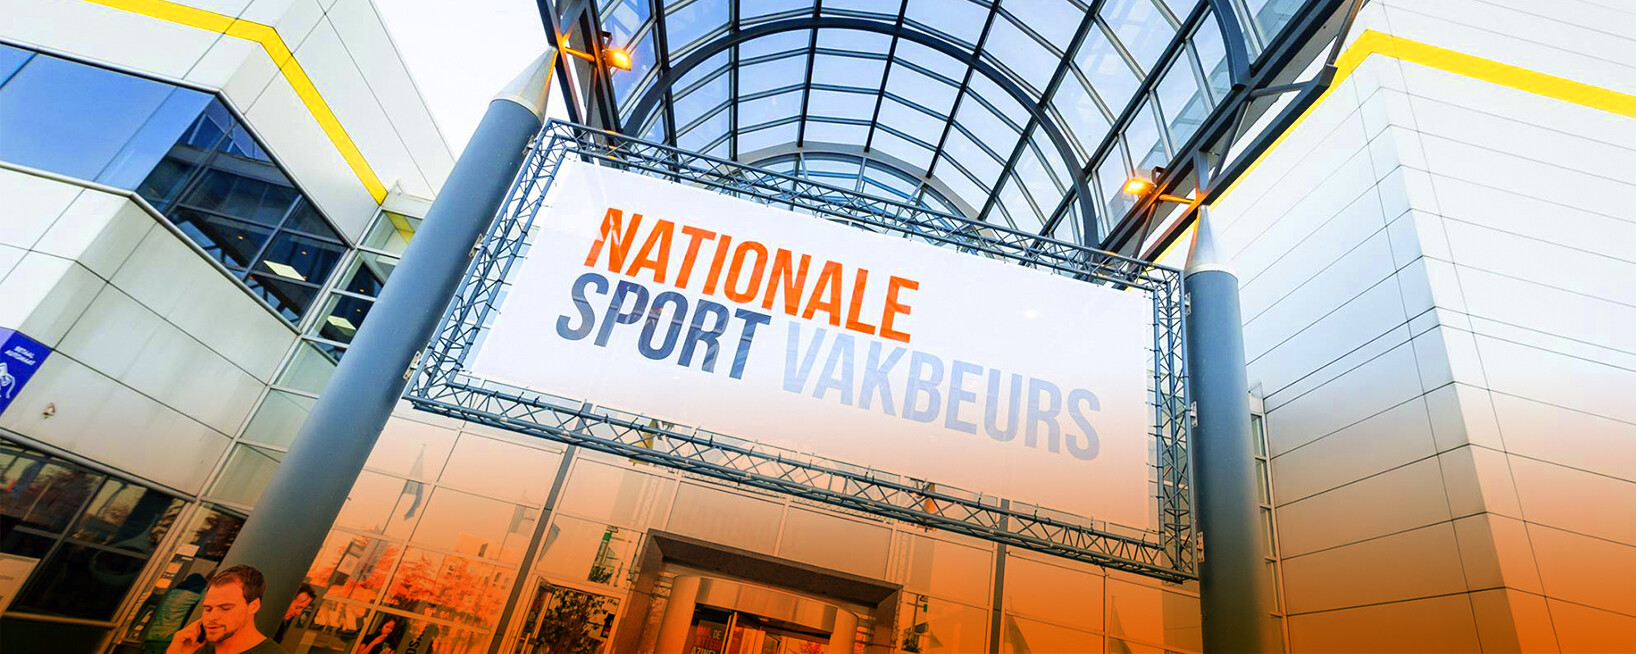 Nationale Sport Vakbeurs 2021: dé beurs voor alle sportverenigingen!